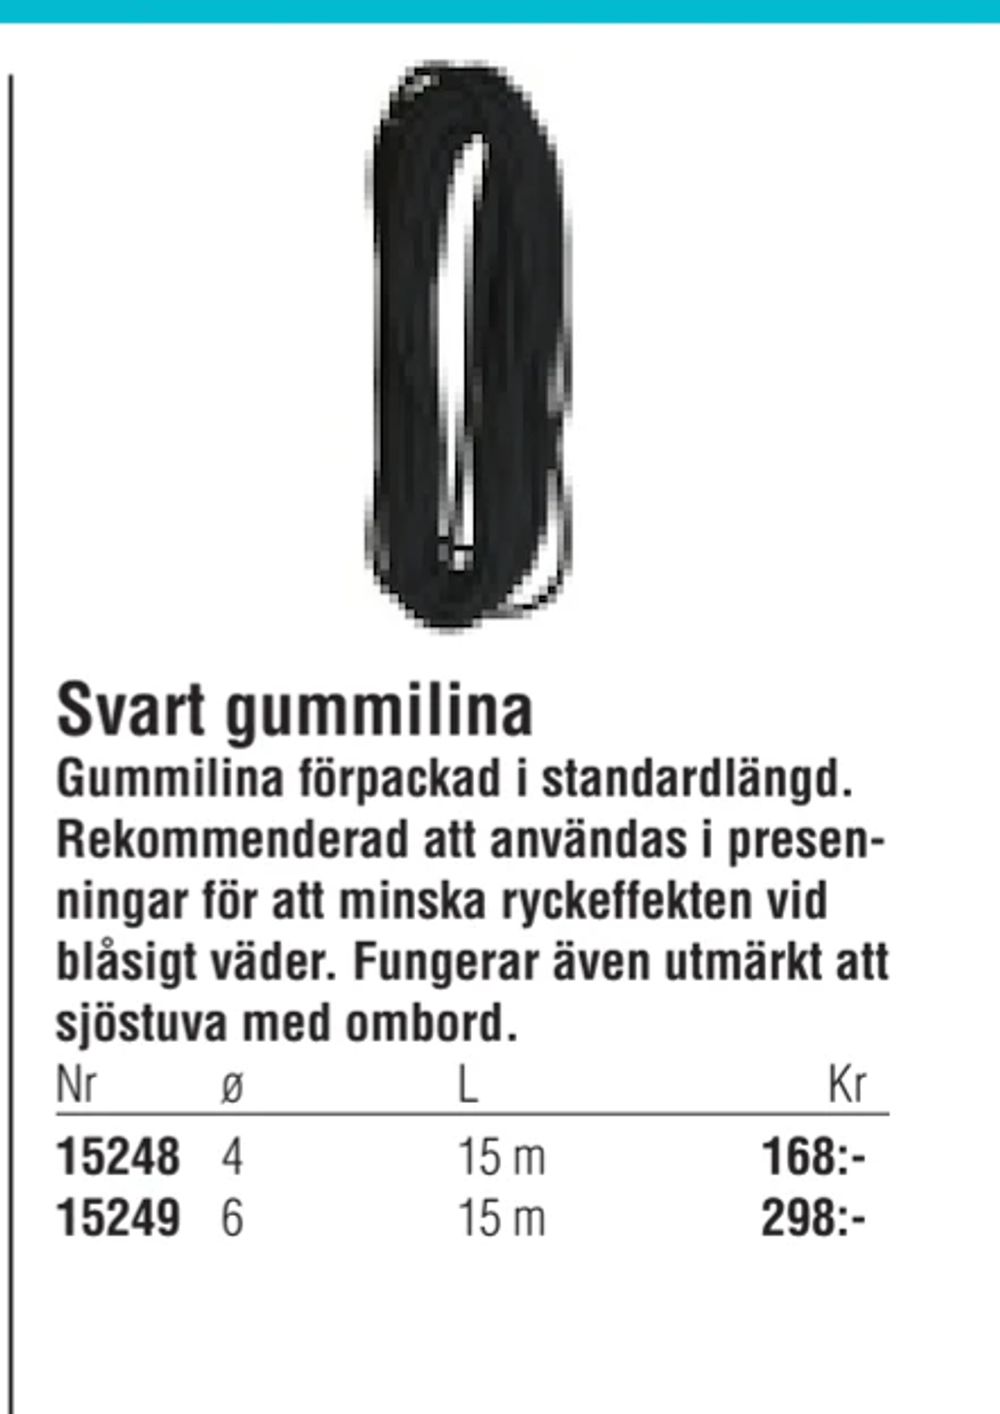 Erbjudanden på Svart gummilina från Erlandsons Brygga för 168 kr